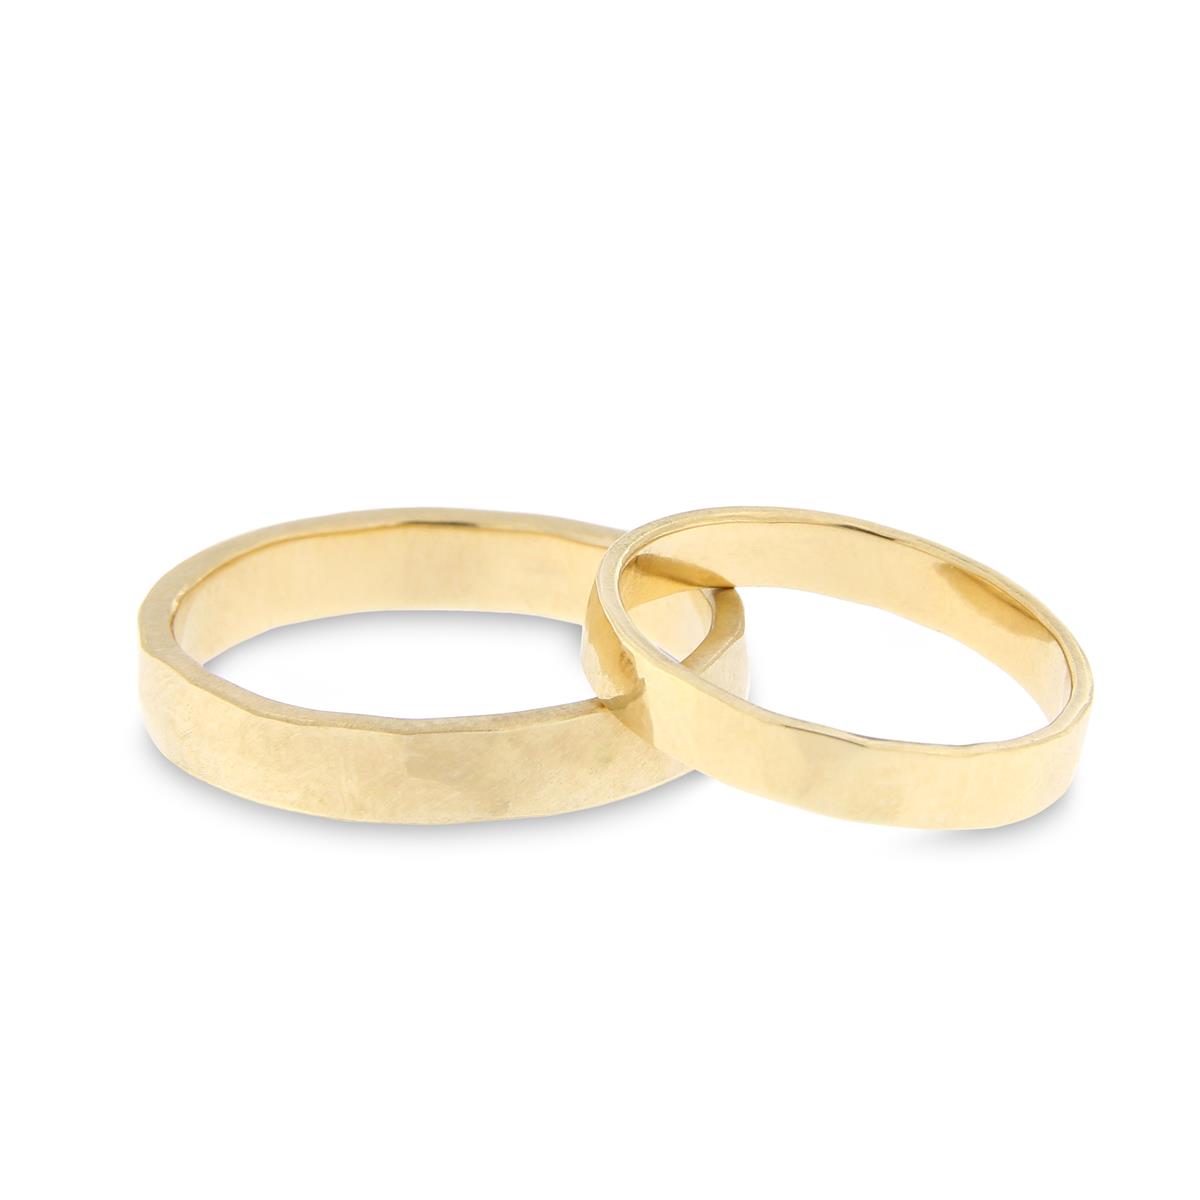 Katie g. Jewellery – Wedding - 14kt. Gold